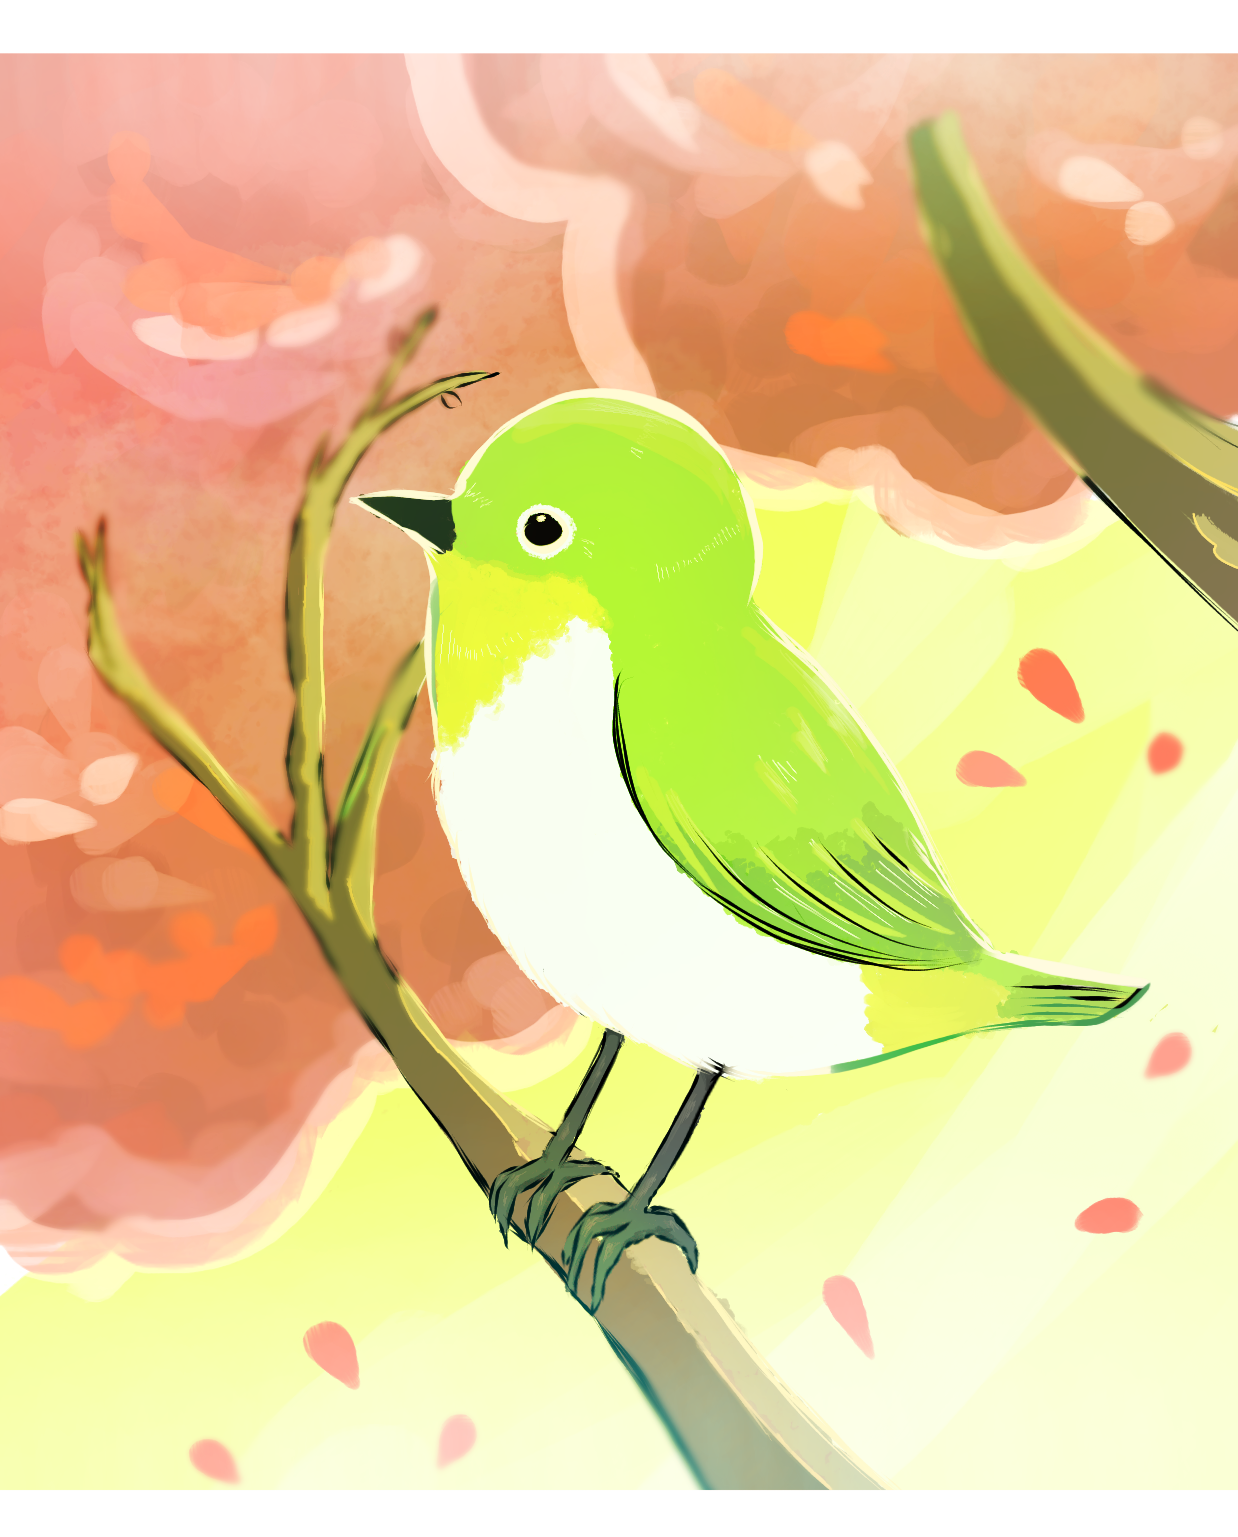 小鳥のイラスト紹介 Novalue 自分らしさで彩るメディア